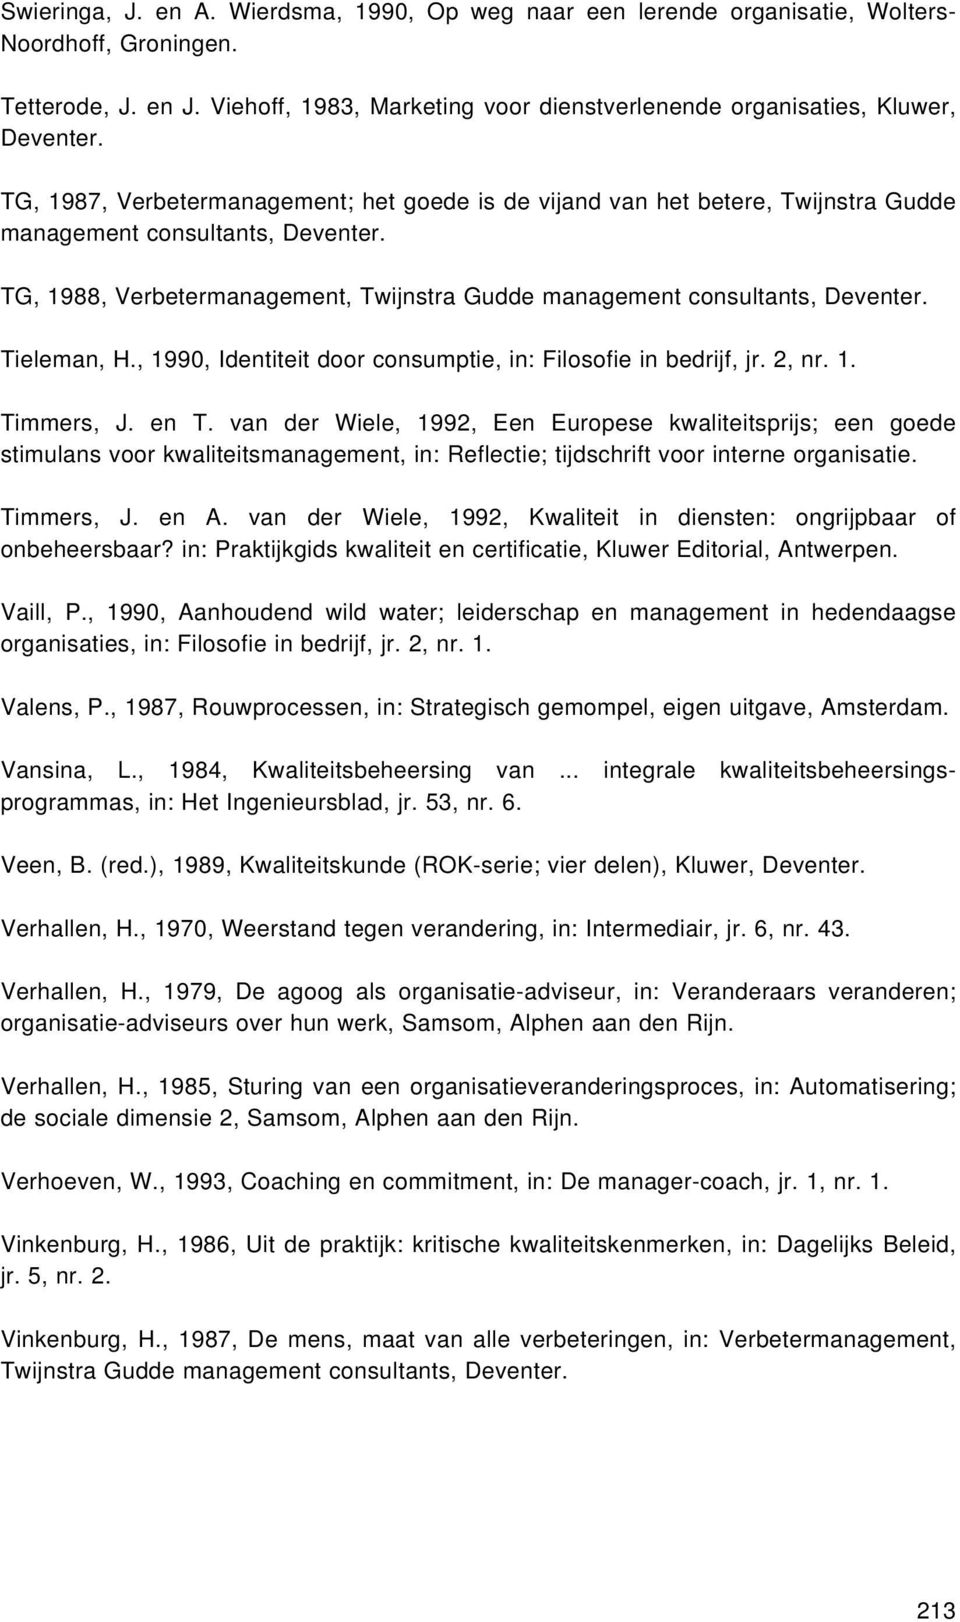 TG, 1988, Verbetermanagement, Twijnstra Gudde management consultants, Deventer. Tieleman, H., 1990, Identiteit door consumptie, in: Filosofie in bedrijf, jr. 2, nr. 1. Timmers, J. en T.